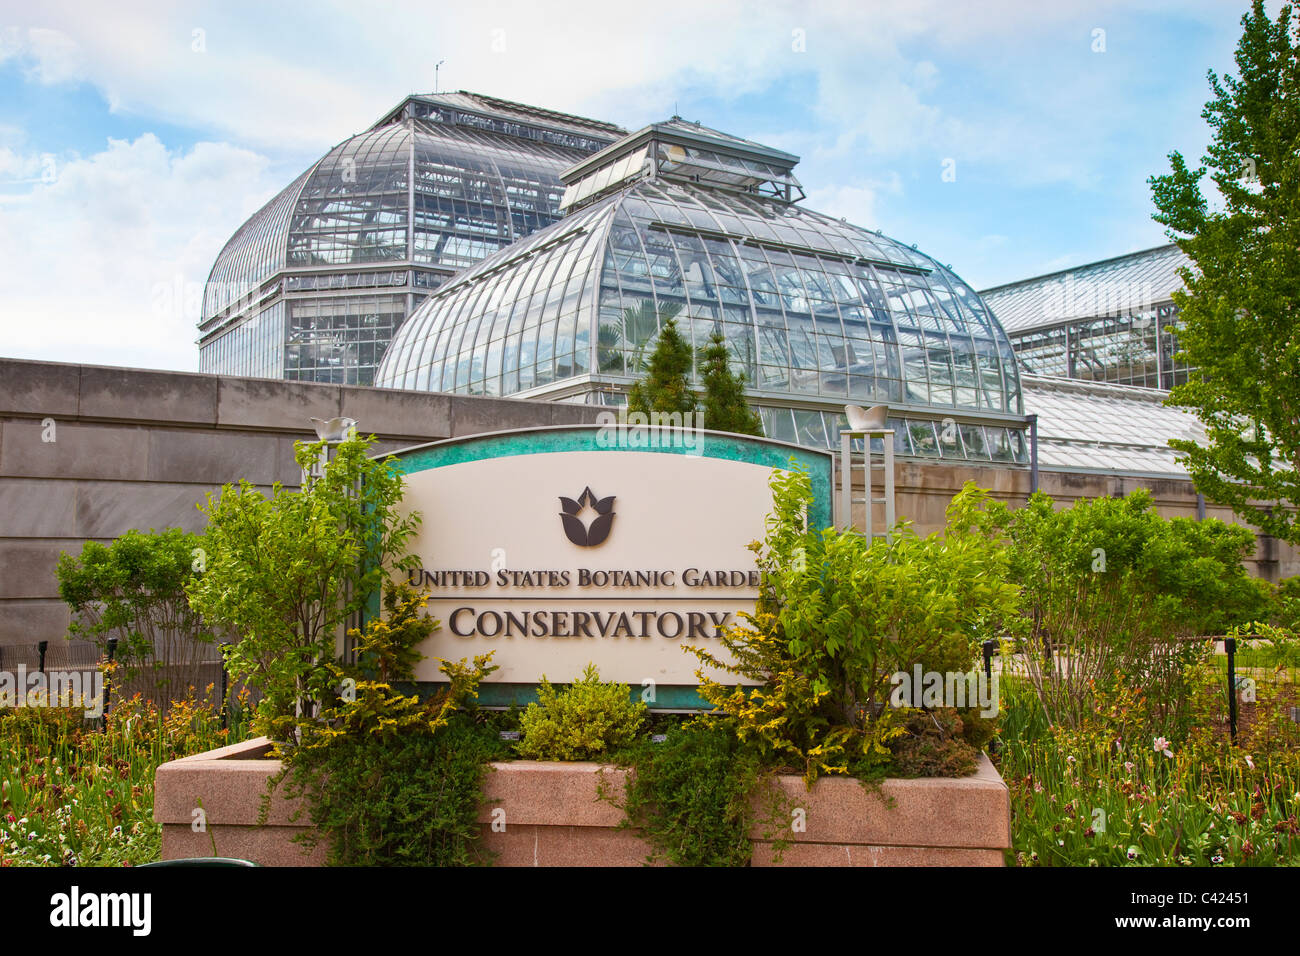 United States Botanic Garden Conservatory, Washington DC Stock Photo